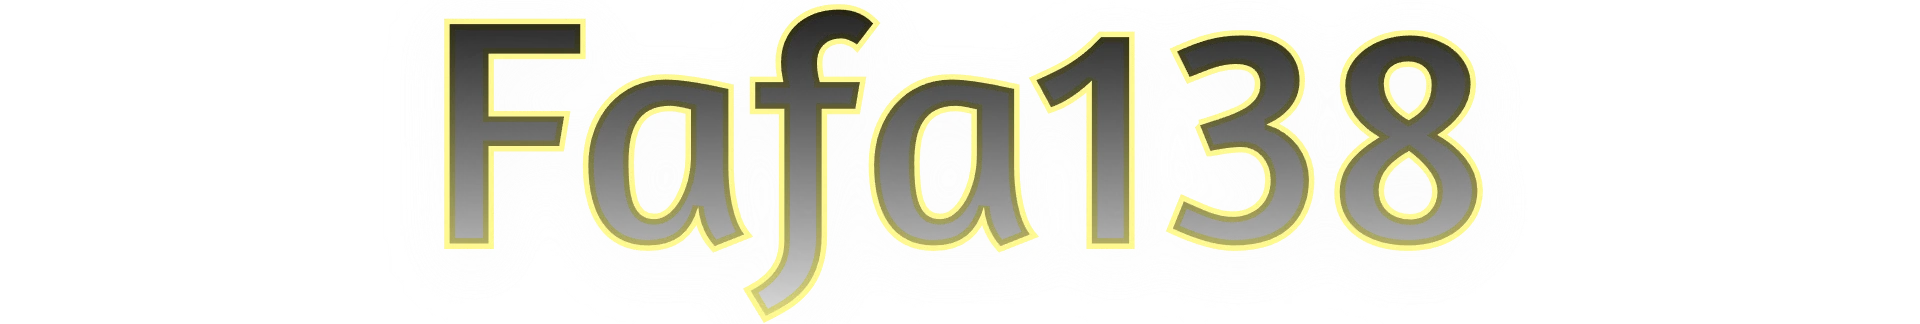 Fafa138